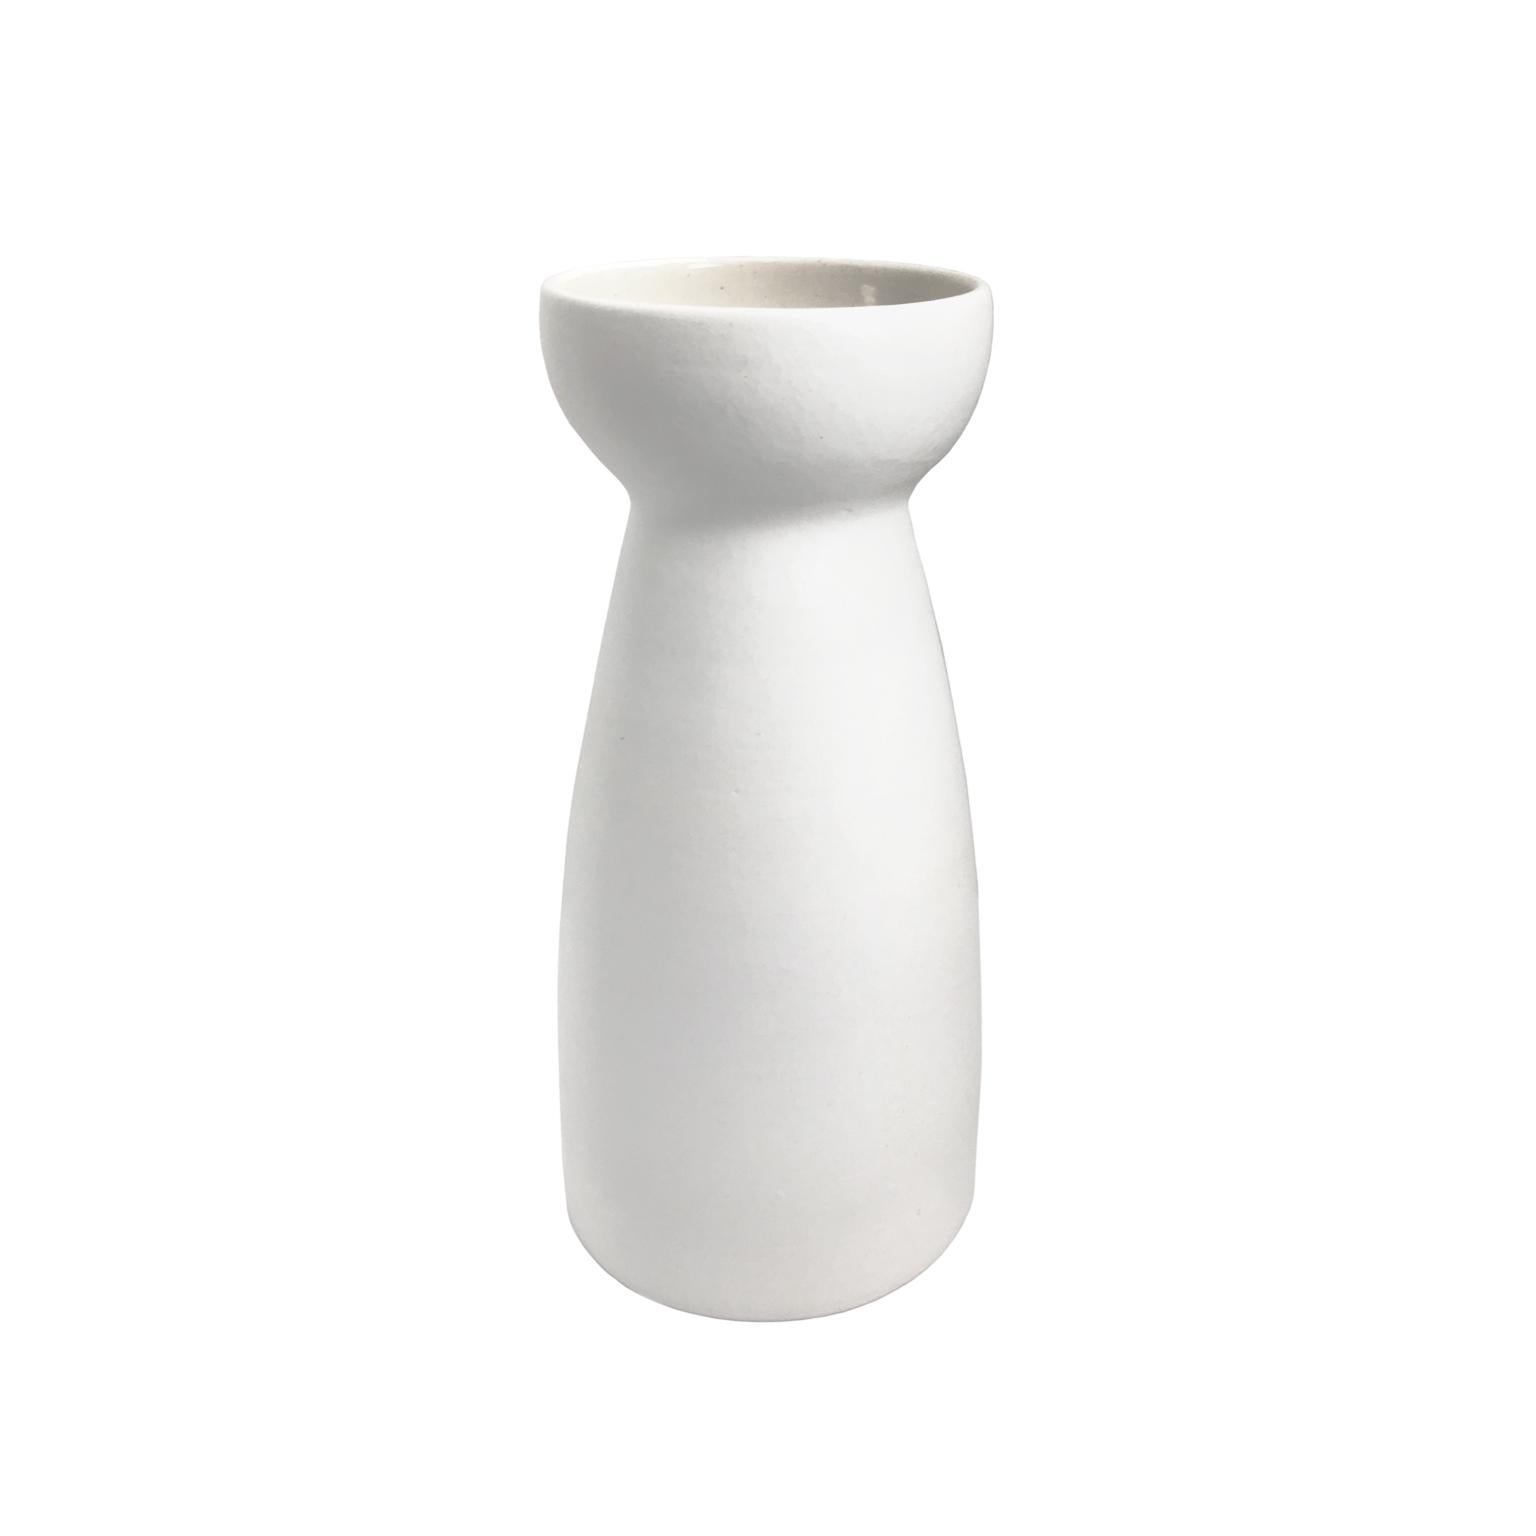 Alabaster Glaze Ceramic Vase #2 by Sandi Fellman